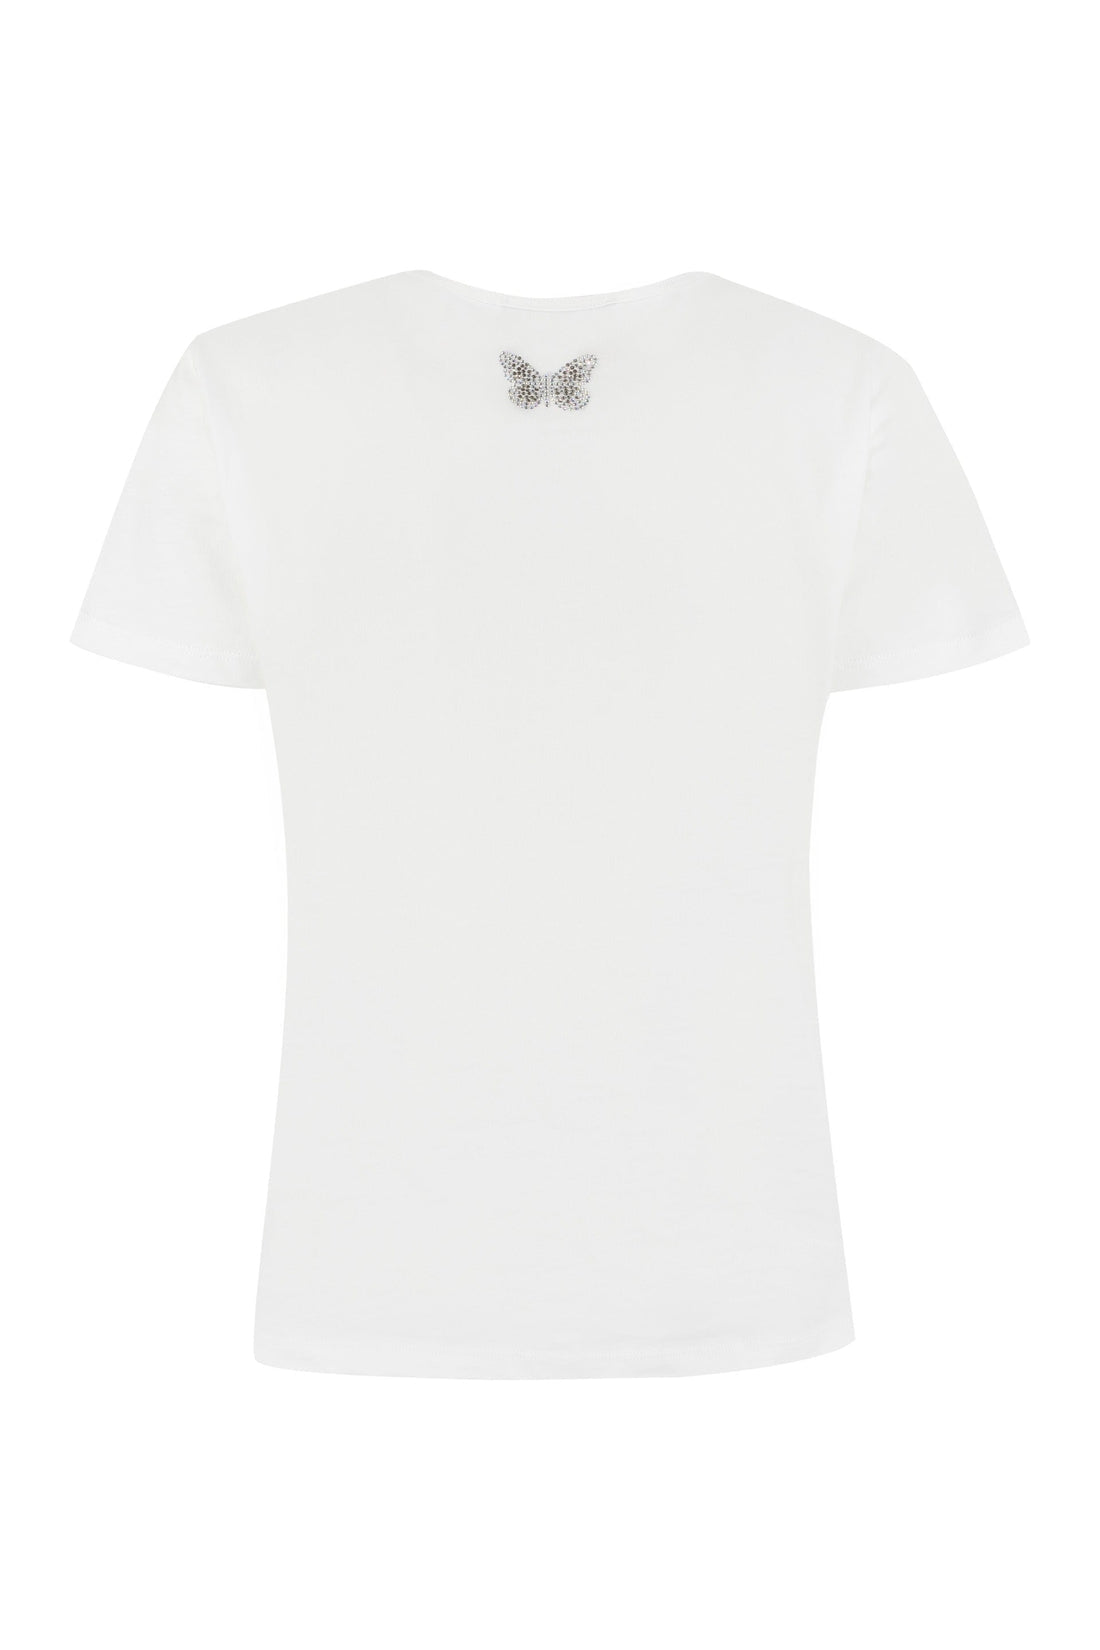 Blumarine-OUTLET-SALE-Logo cotton t-shirt-ARCHIVIST